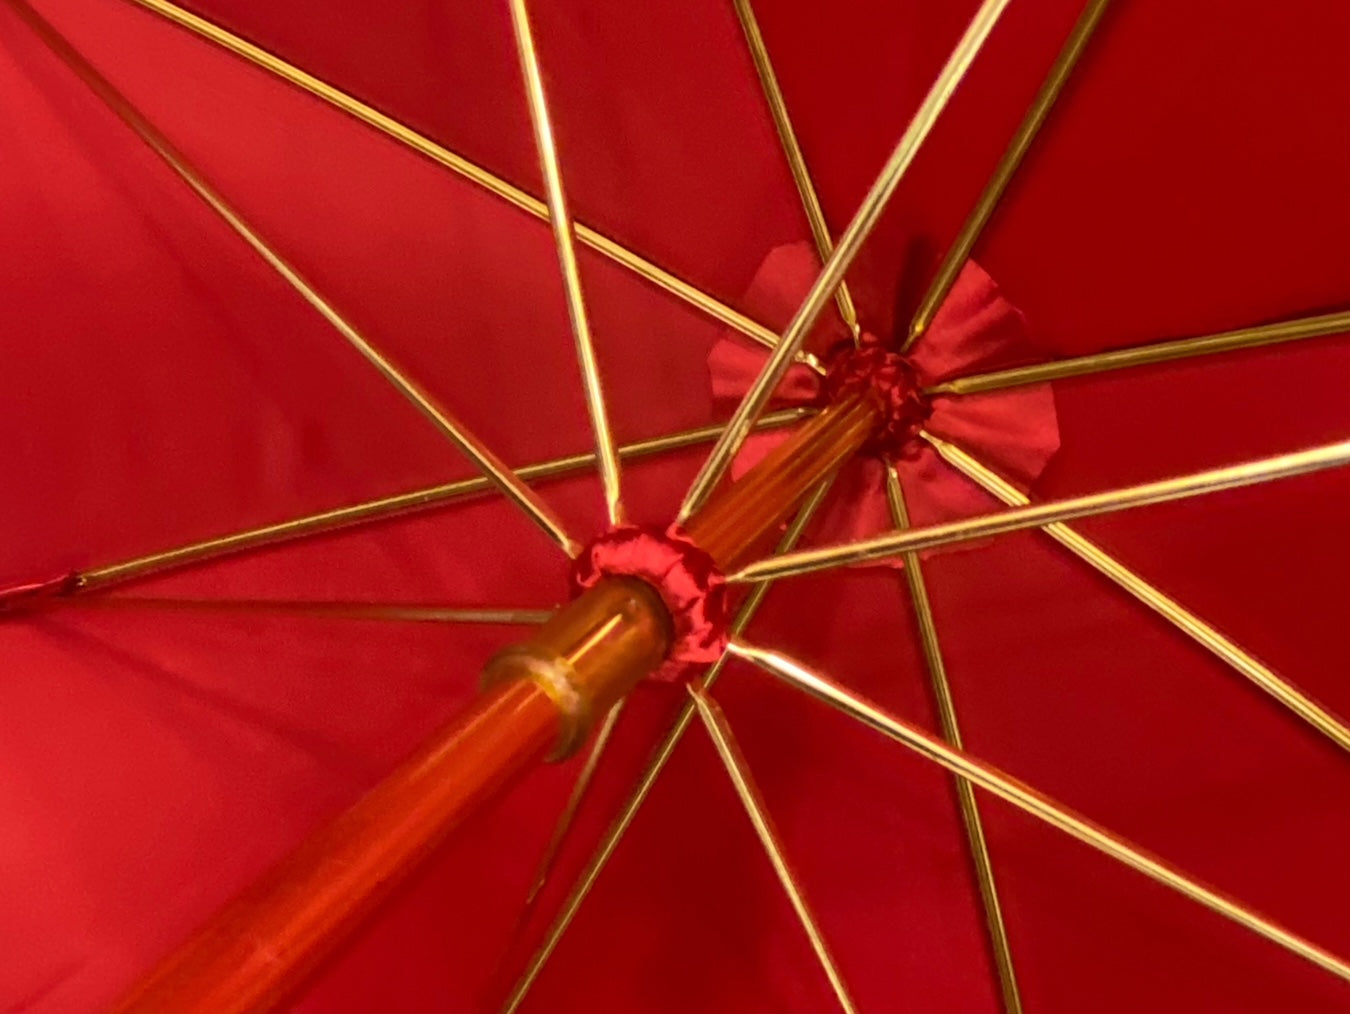 Ombrello Donna "stile 800" Colore Rosso lucido manico in canna di Malacca lavorazione artigianale Ombrelli Domizio dal 1989 Made in Italy